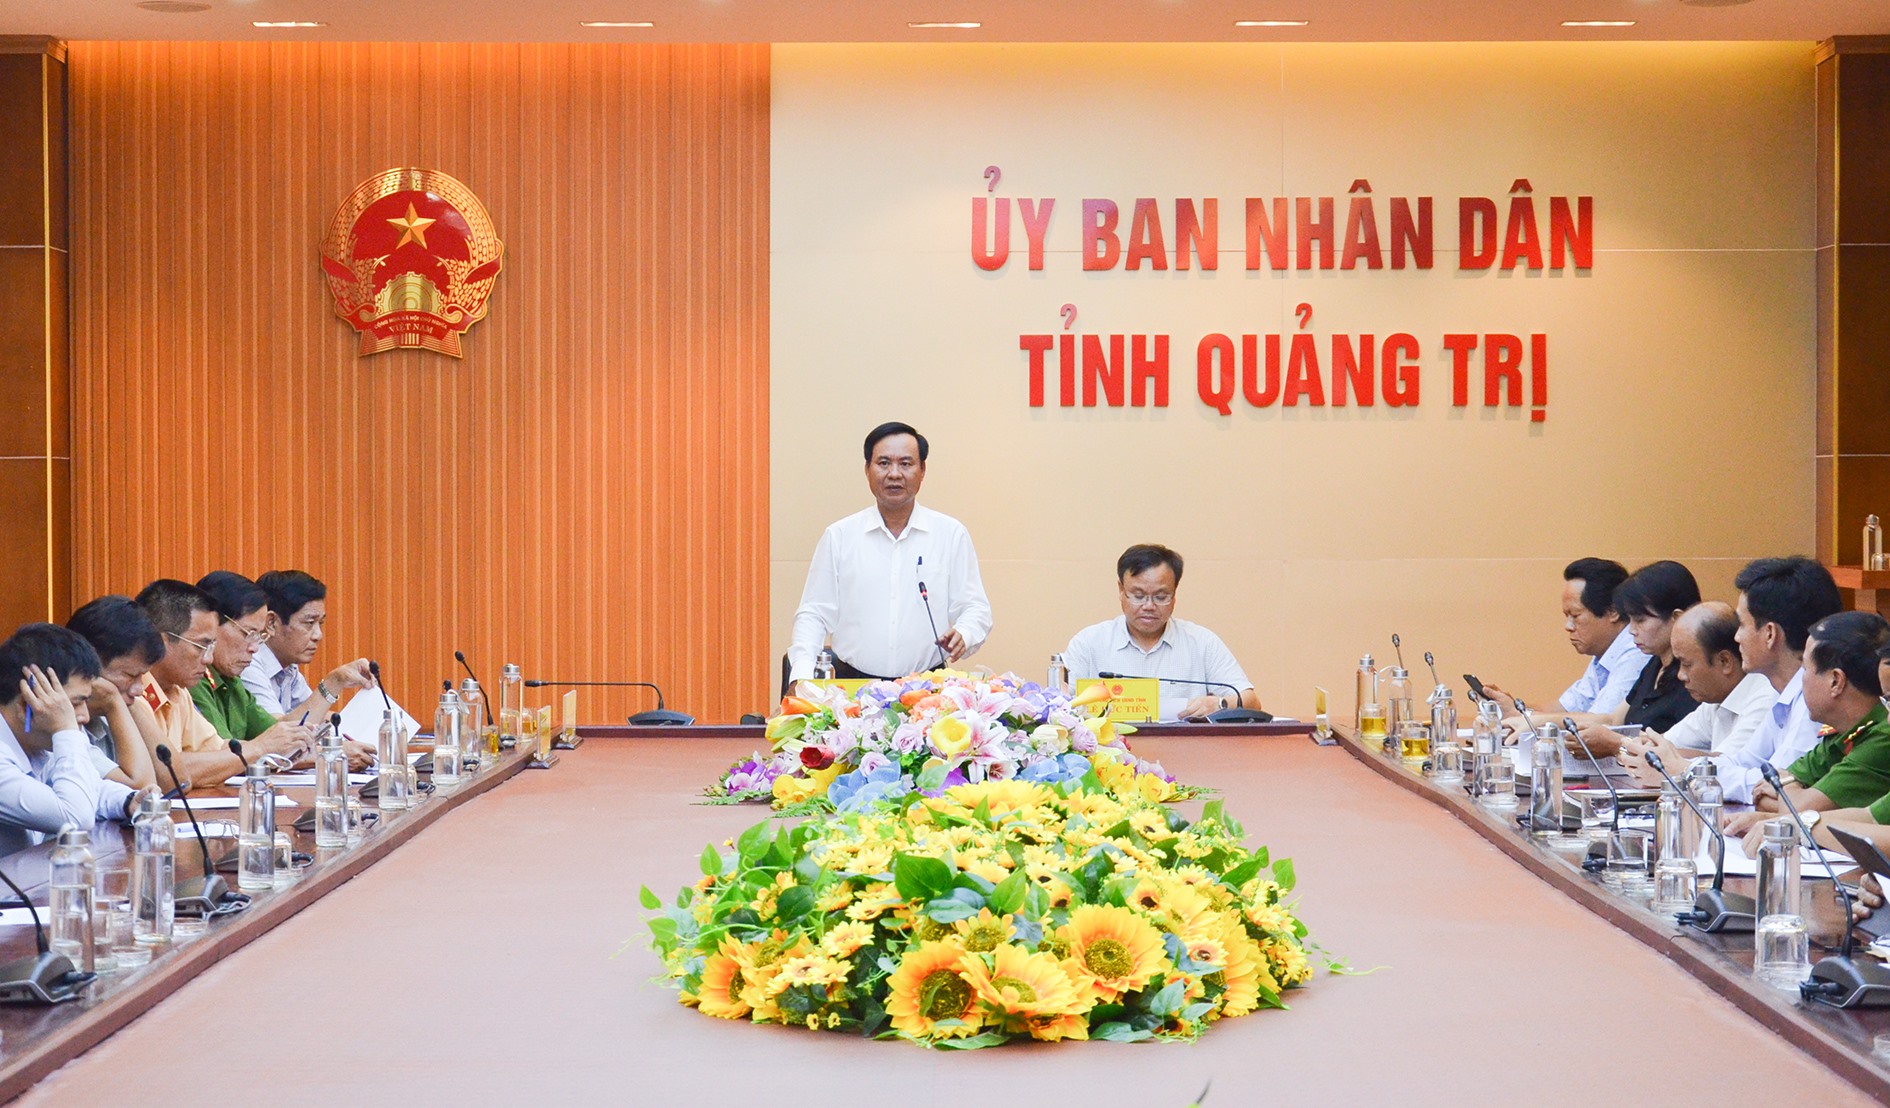 Chủ tịch UBND tỉnh Võ Văn Hưng yêu cầu các cơ quan, đơn vị phải kiên quyết xử lý cán bộ, công chức, viên chức vi phạm pháp luật ATGT - Ảnh: Lê Minh